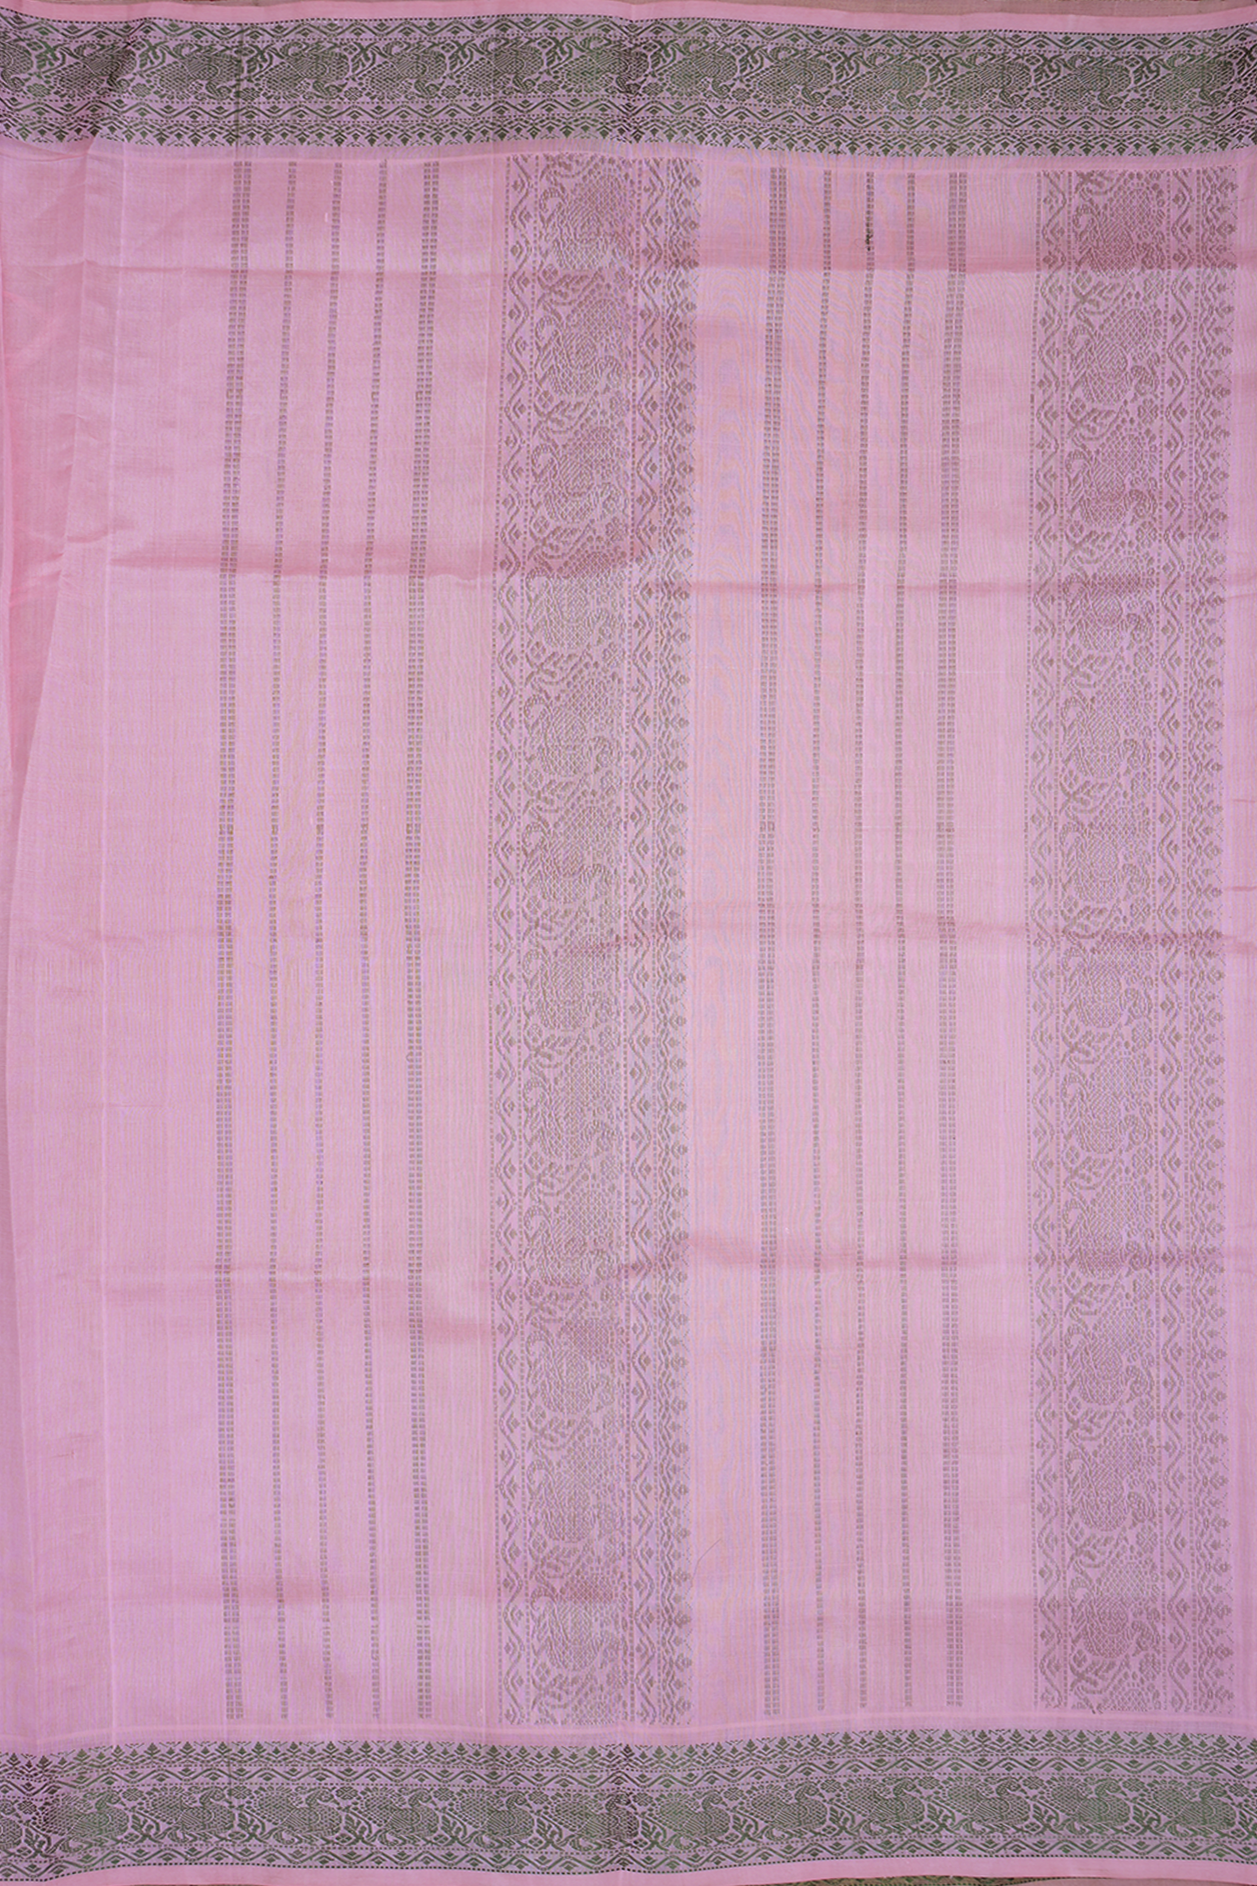 Allover Rudraksh Design Pink Silk Cotton Saree